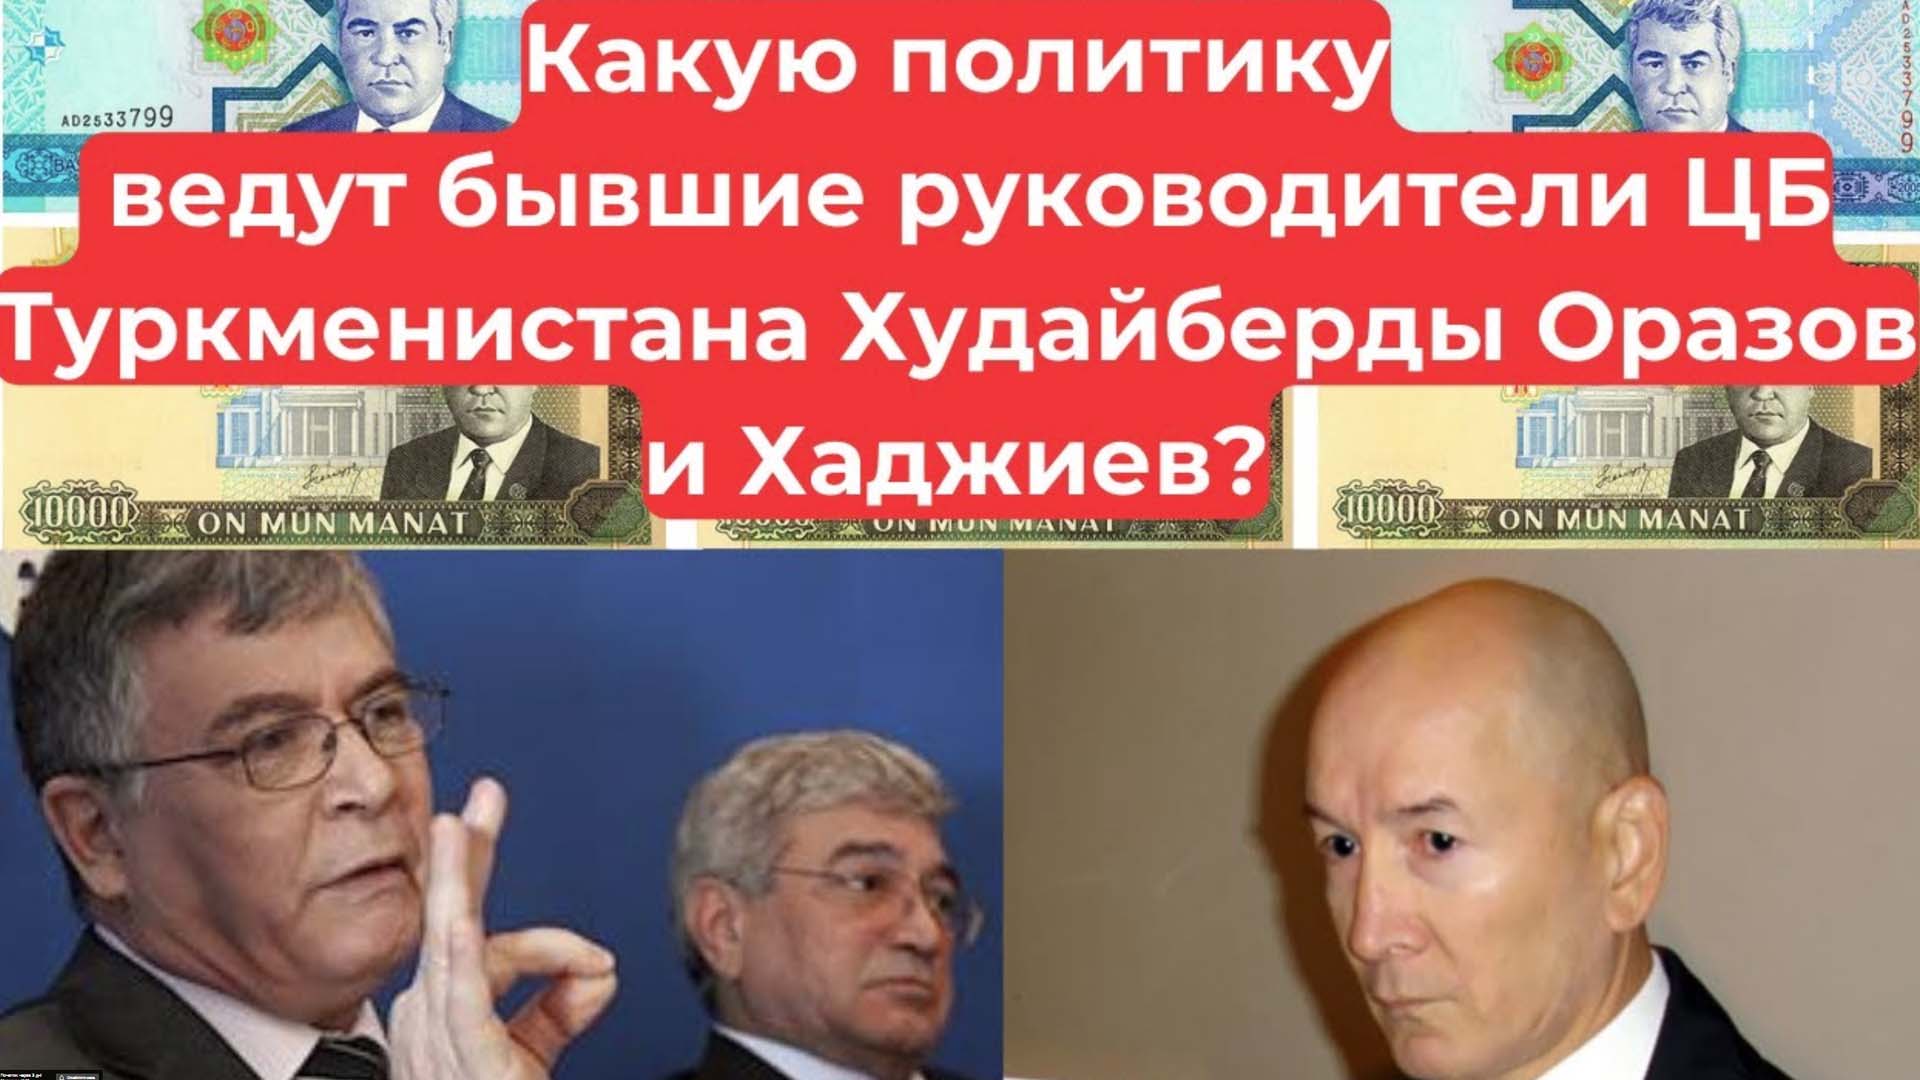 Quel genre de politique mènent les anciens dirigeants de la Banque centrale du Turkménistan, Khudaiberd Orazov et Khadzhiev ?